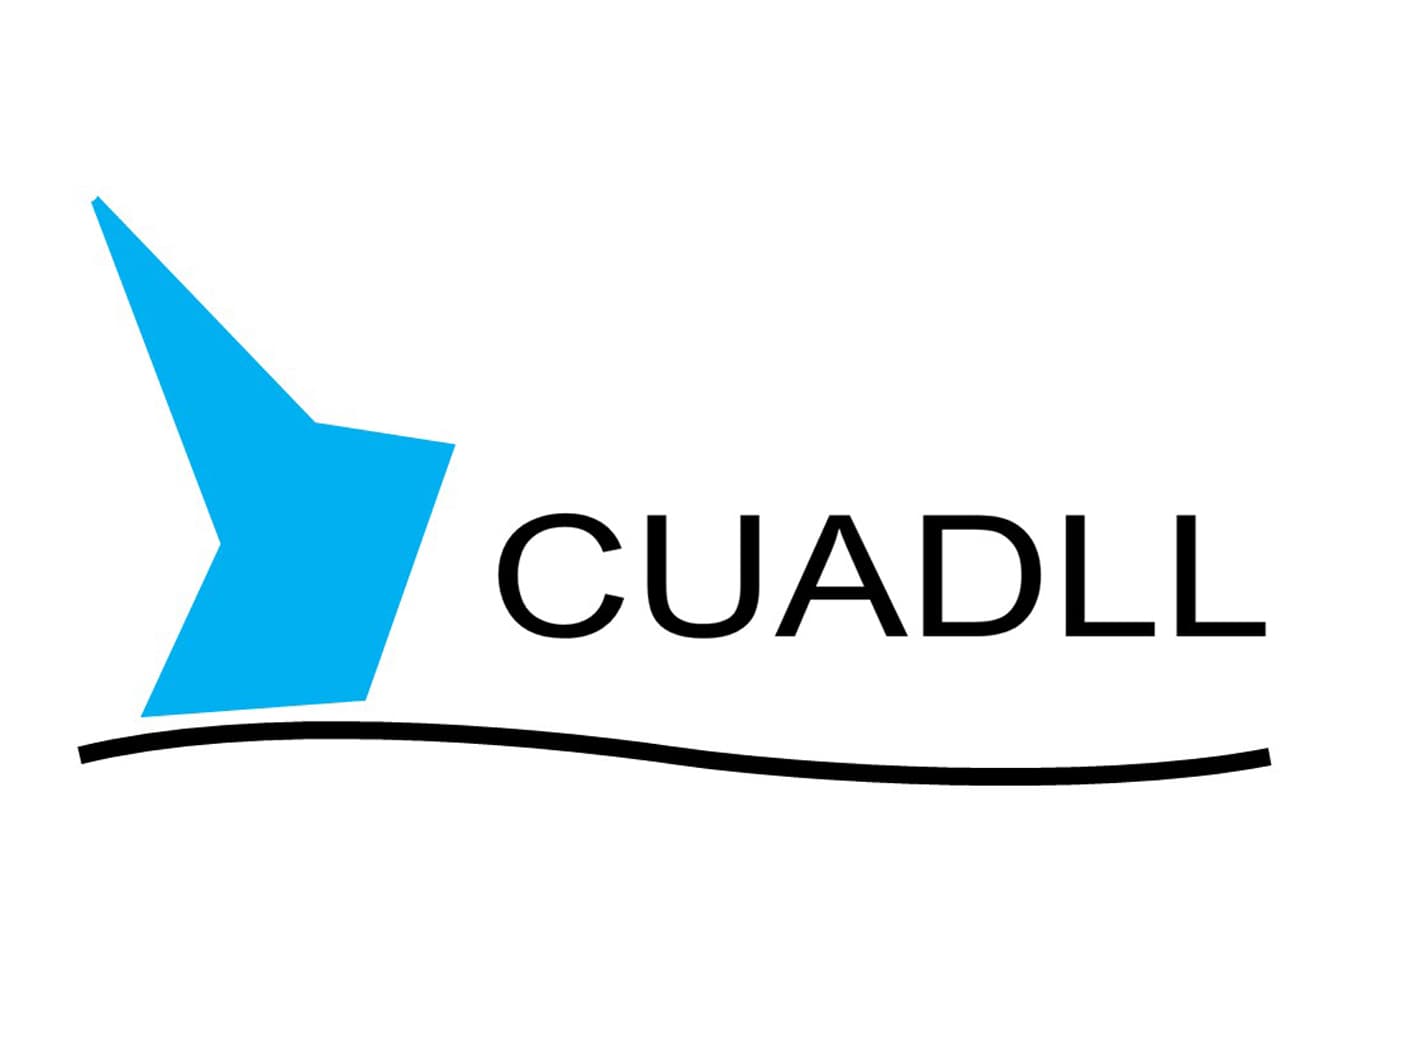 CUADLL logo